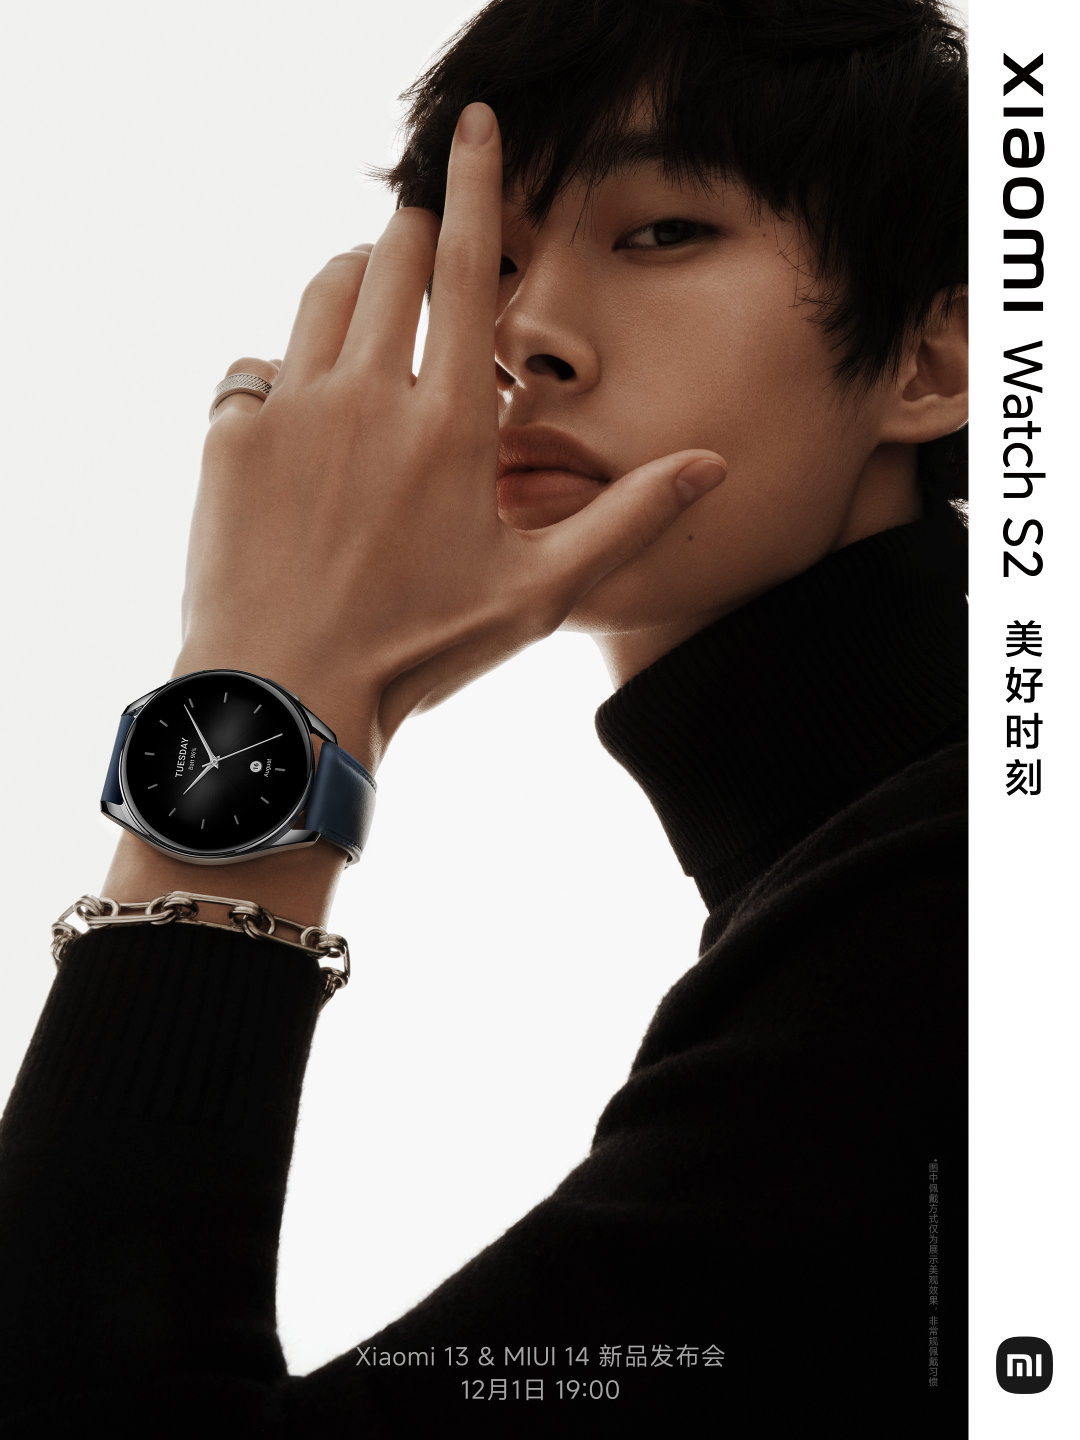 xiaomi watch s2 teaser 1